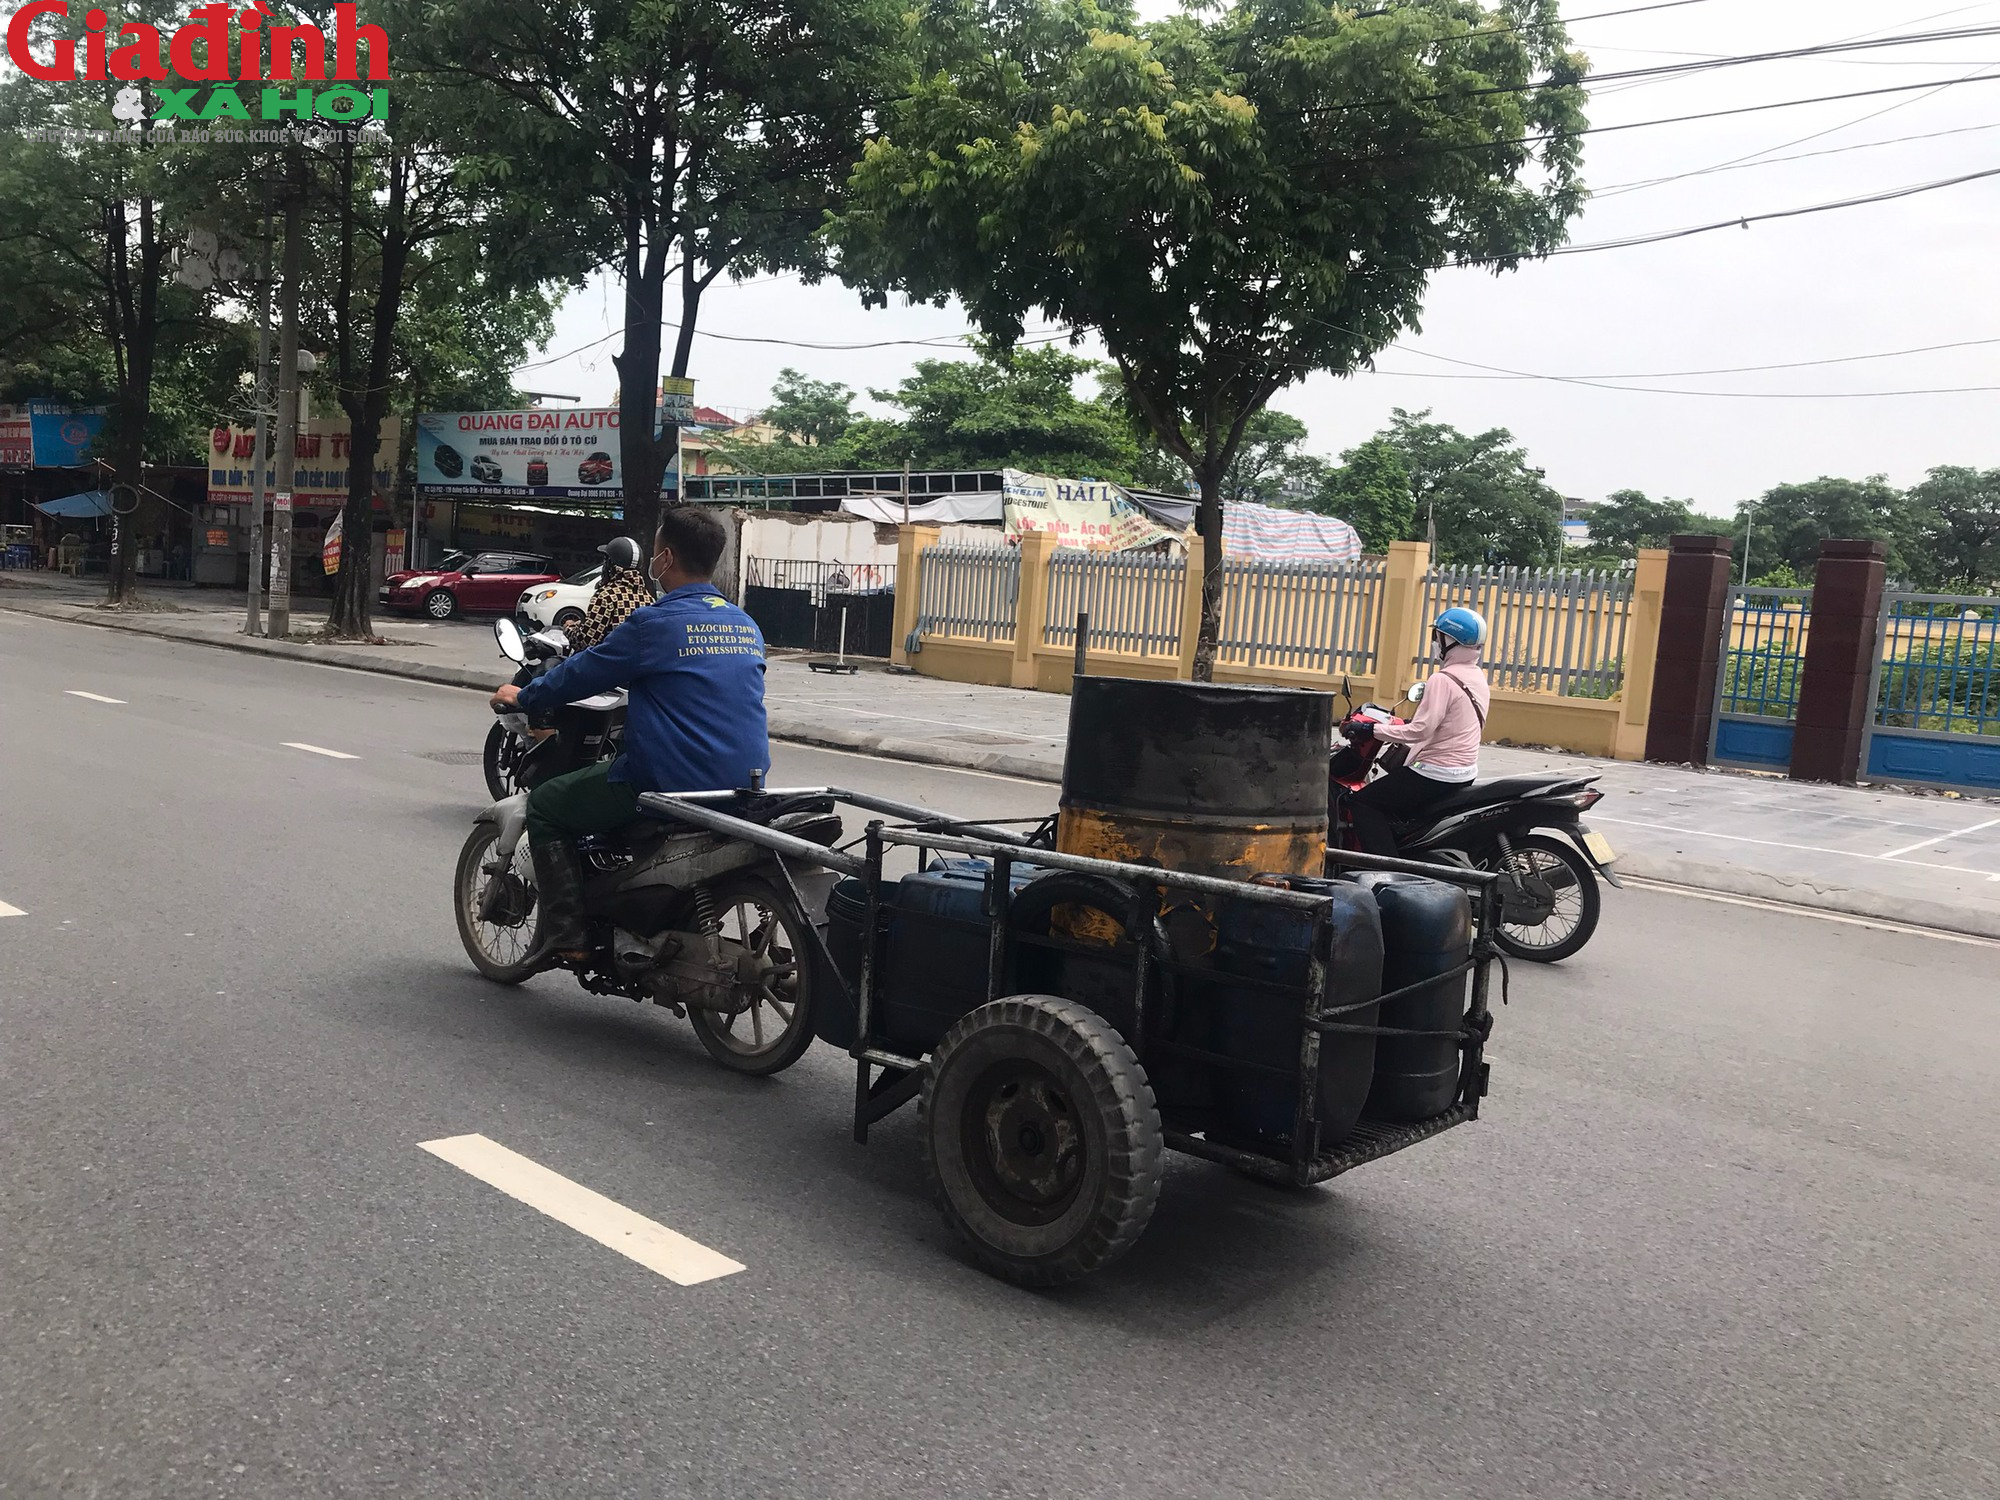 Ám ảnh với xe tự chế lưu thông trên đường phố Hà Nội - Ảnh 2.